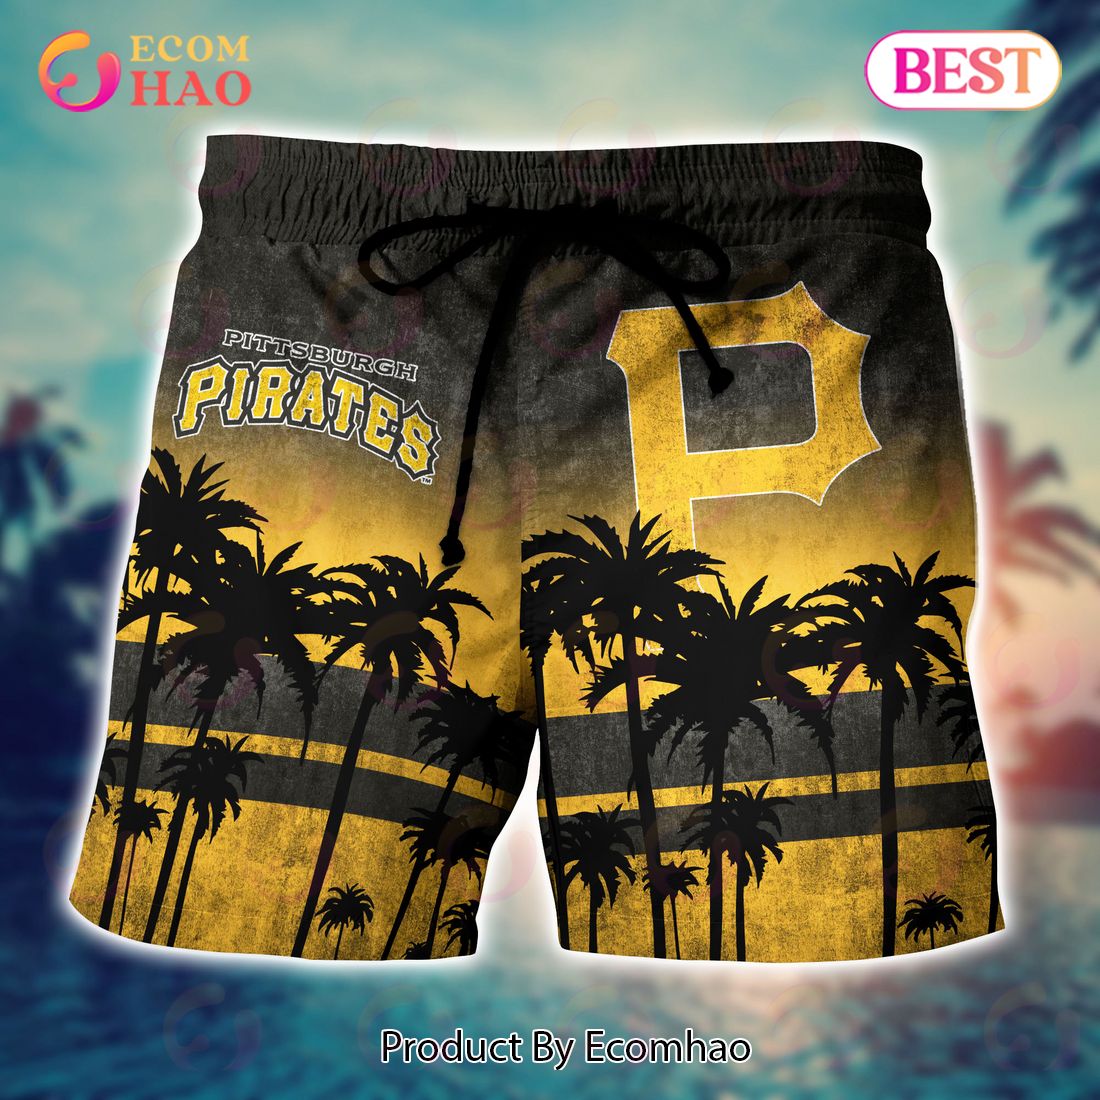 LIMITED] Pittsburgh Pirates MLB-Summer Hawaiian Shirt And